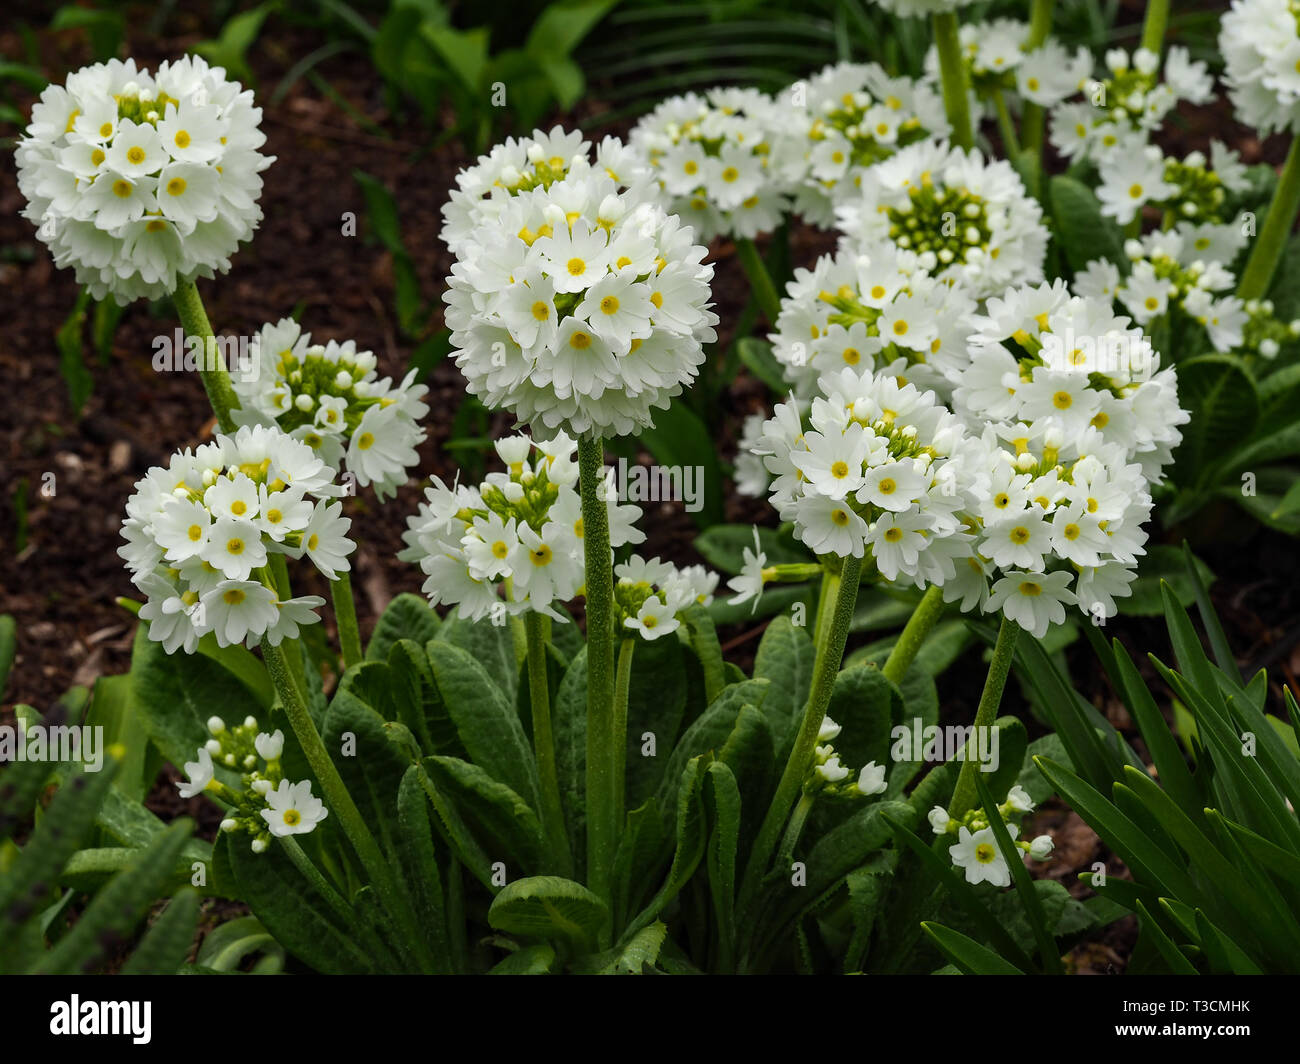 Pretty white drumstick primulas (Primula denticulata alba) flowering in a spring garden Stock Photo